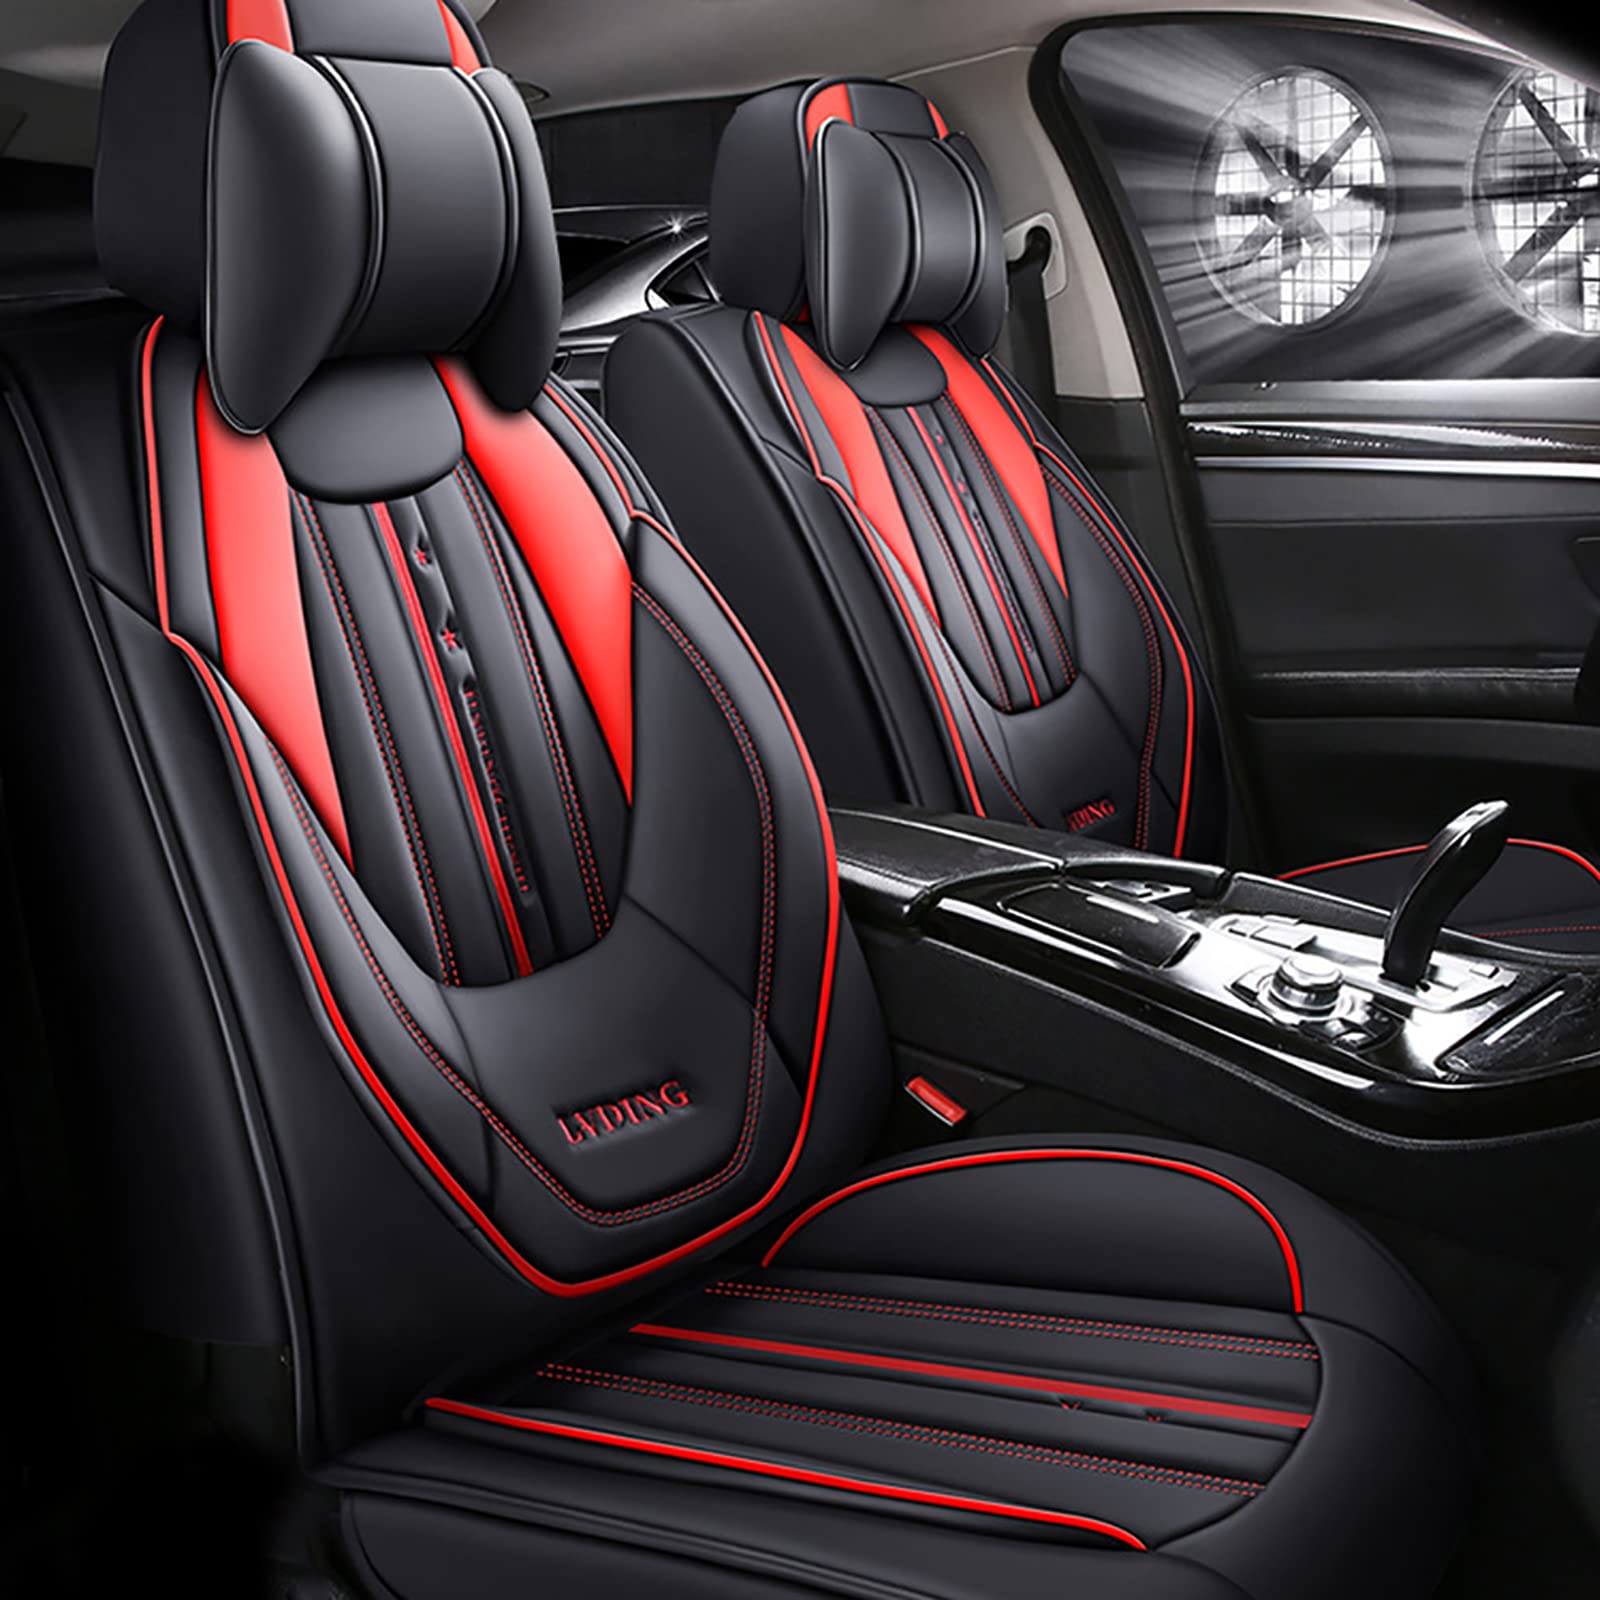 Maipula Auto Sitzauflage Für Toyota Auris Luxus 5 Sitze Allwetter-Autositzbezug Kunstleder Komfortabler Autositzbezüge Schwarz Rot von Maipula